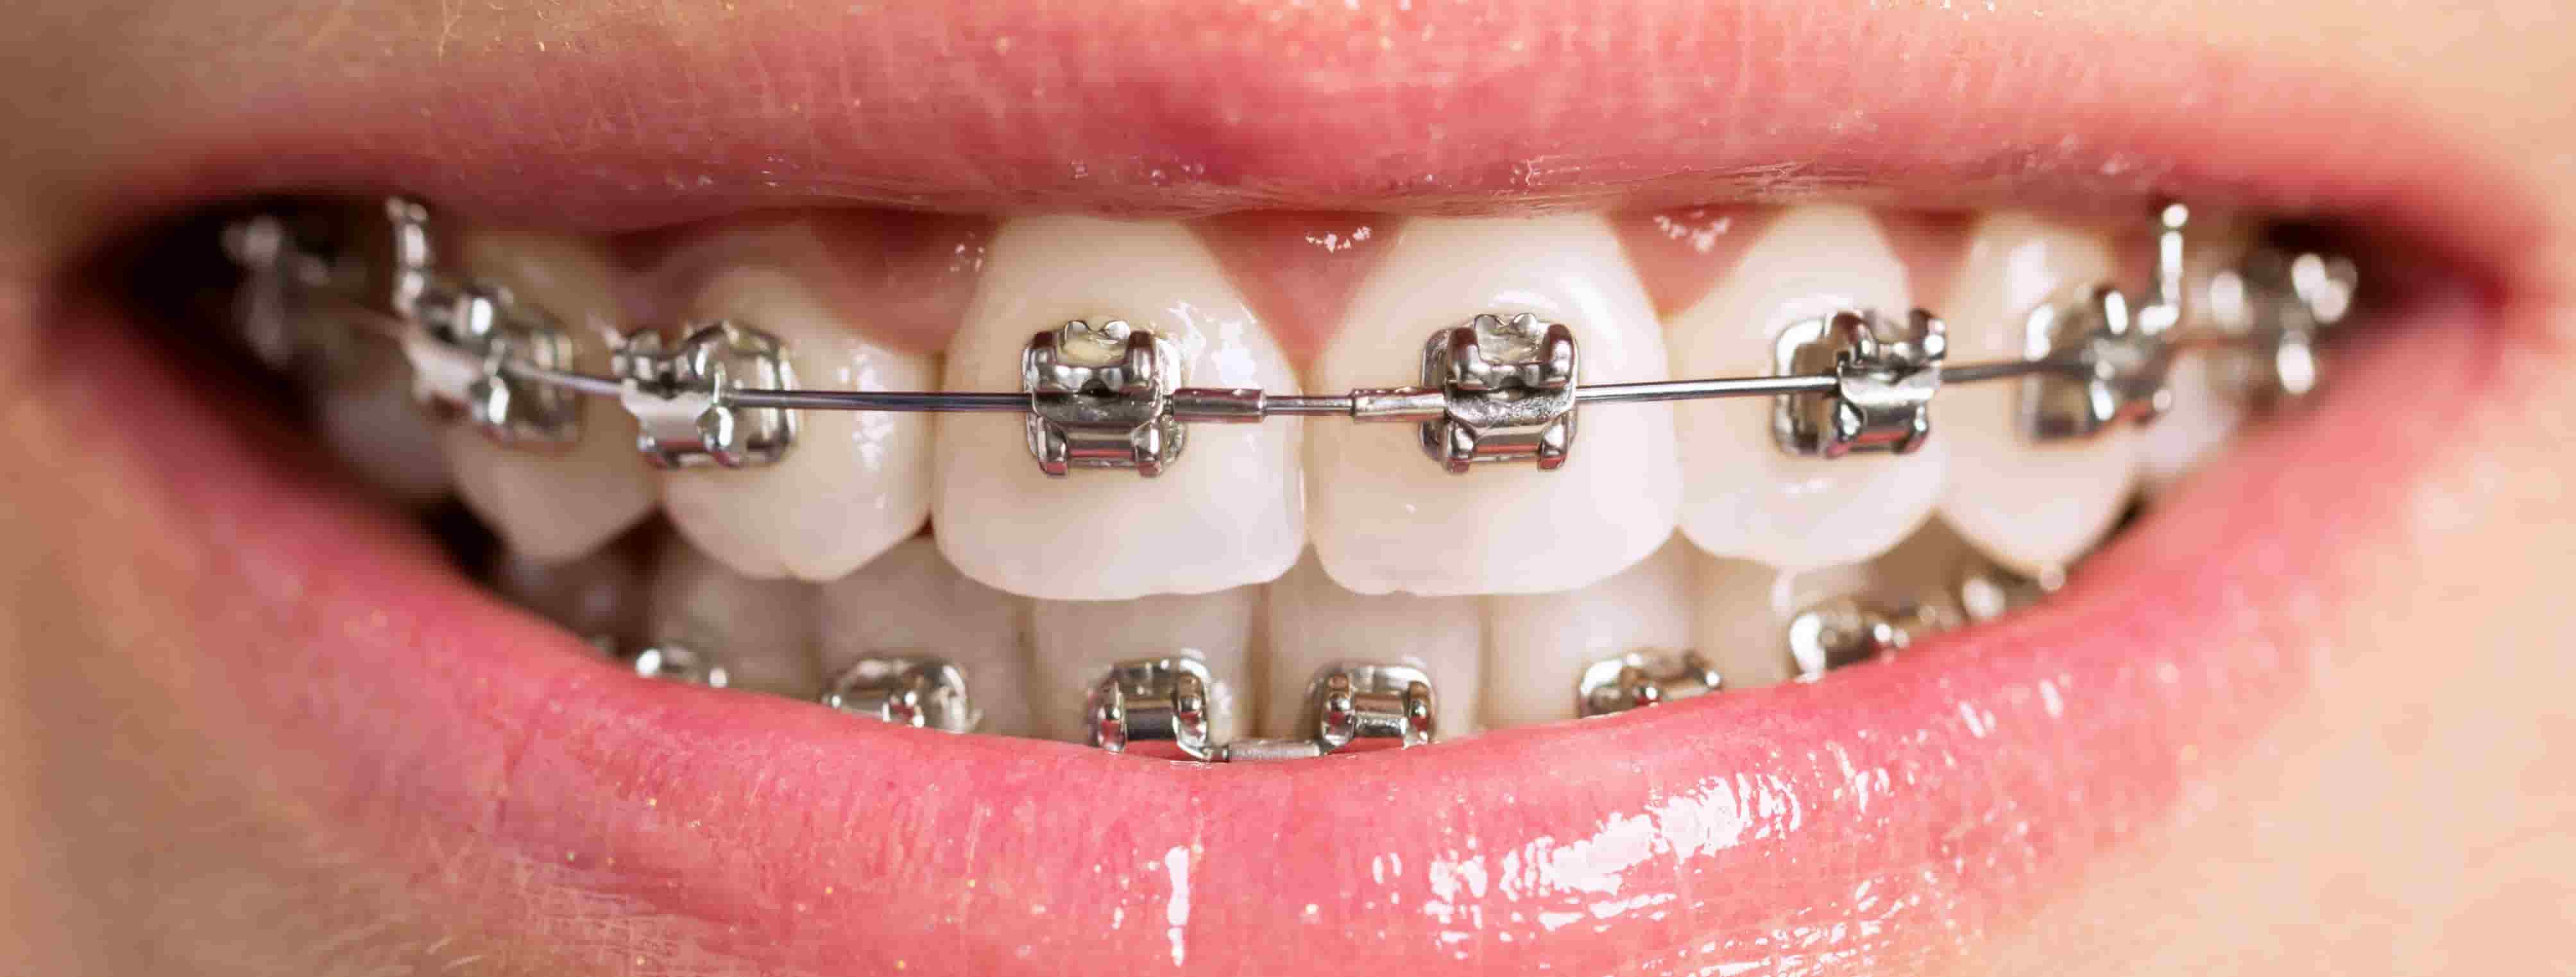 teeth with metal braces